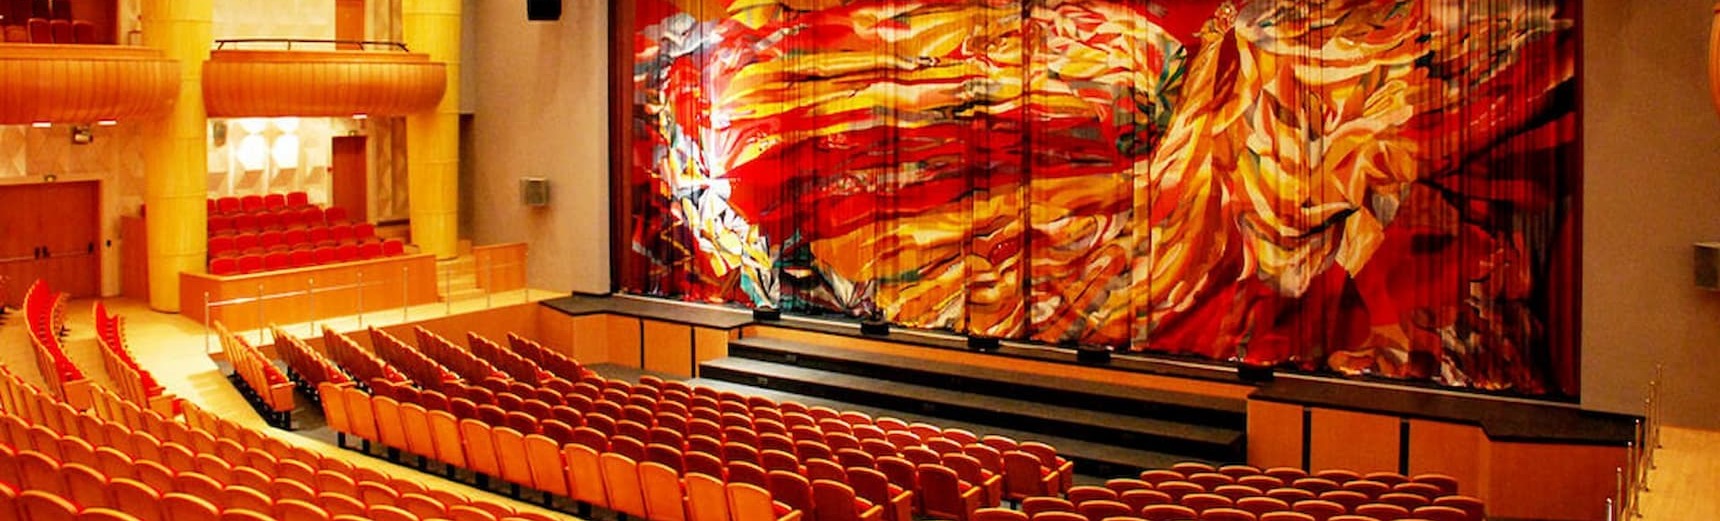 Театр надежды бабкиной схема зала основная сцена - 98 фото